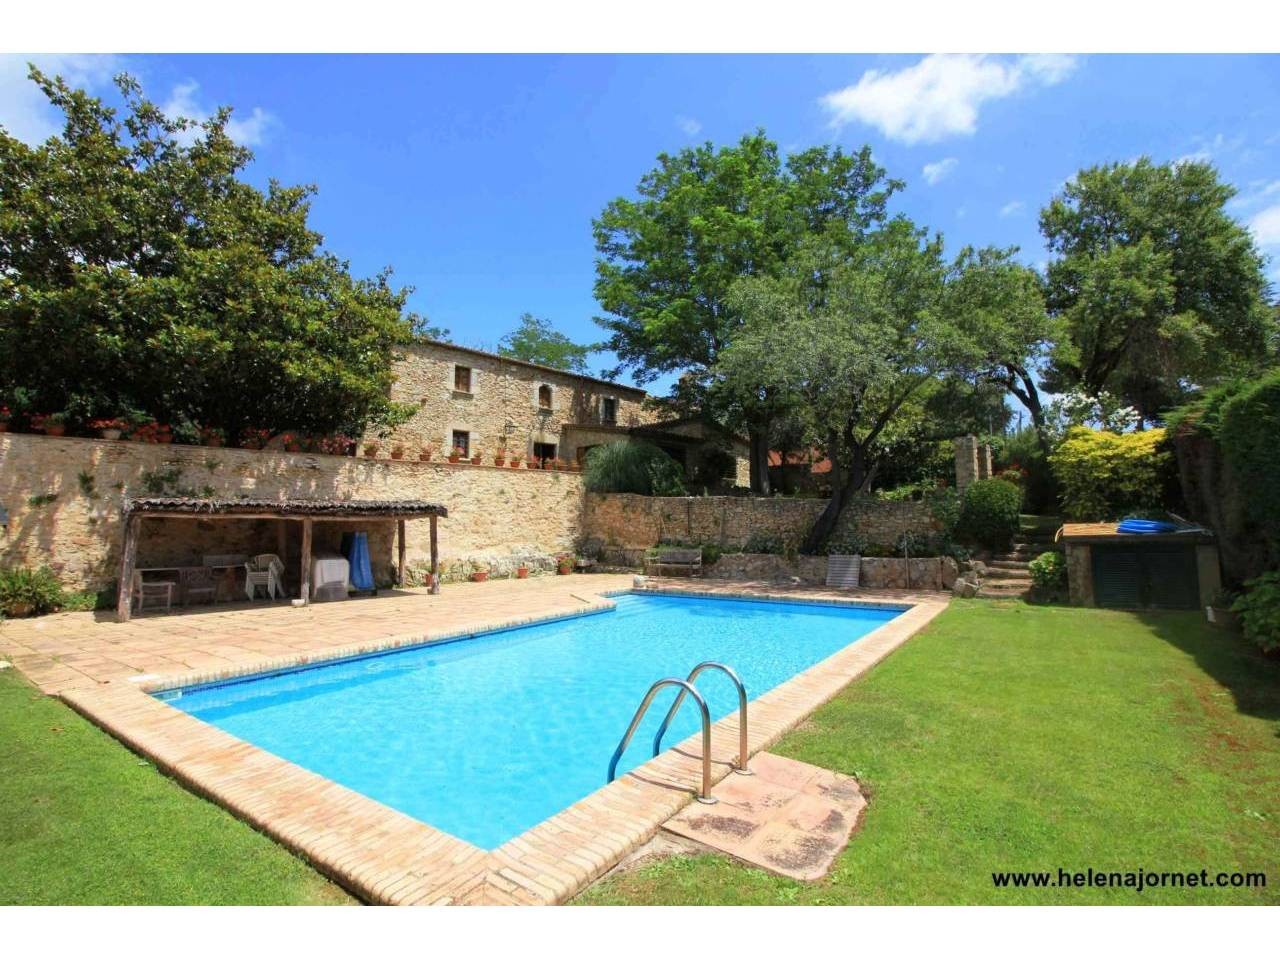 Masía catalana totalmente restaurada con jardín y piscina al lado del centro del pueblo - 1372